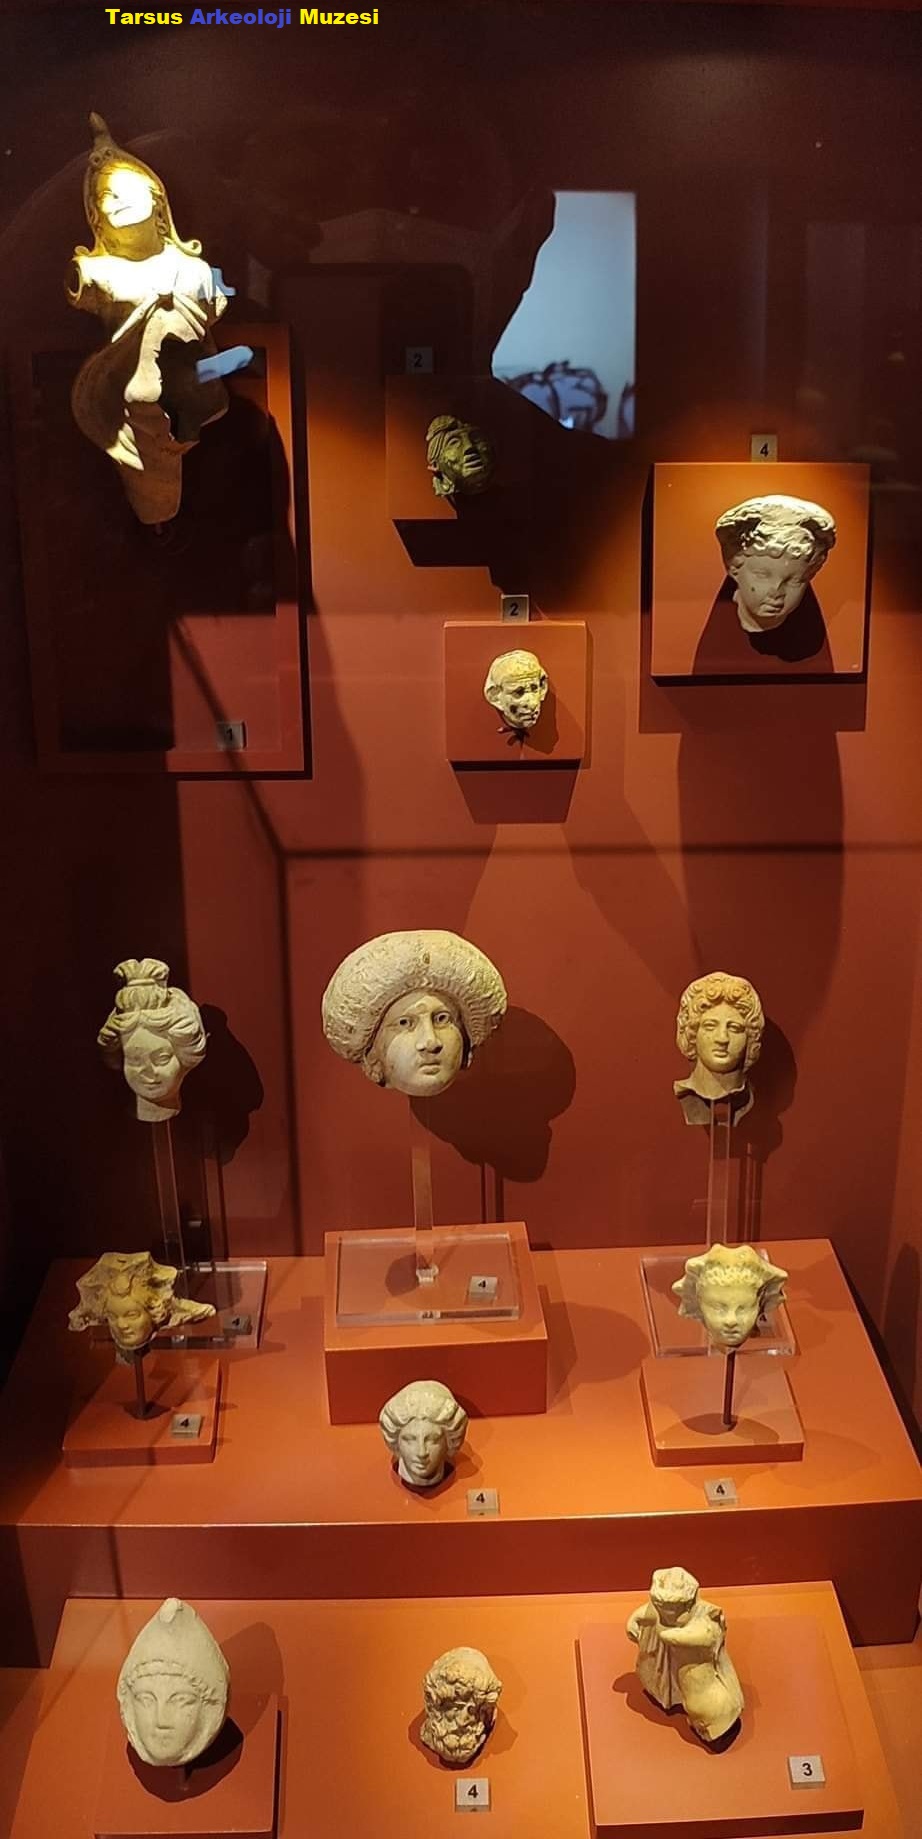 Tarsus Arkeoloji Muzesi'nde görülebilen heykeller